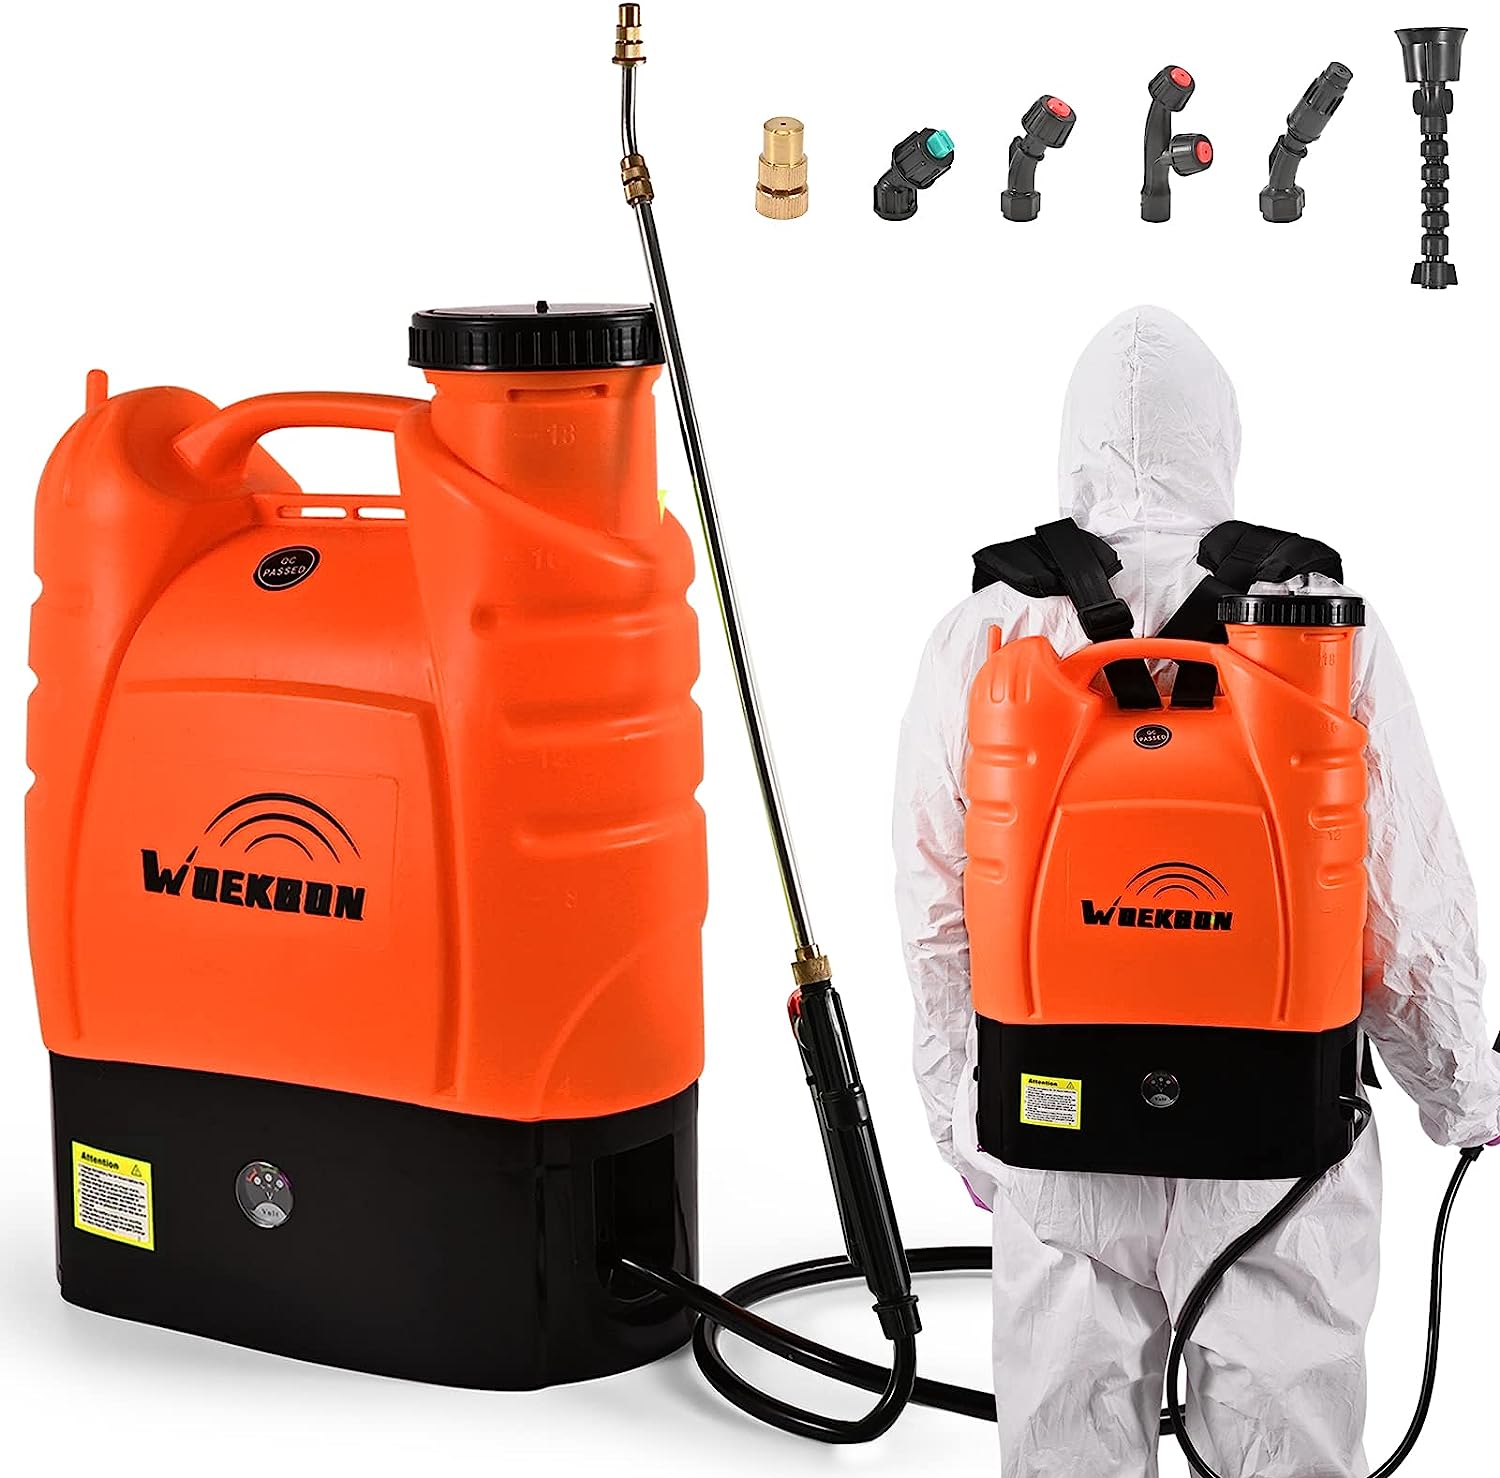 WOEKBON 4 Gallon Battery Powered Backpack Sprayer [...]